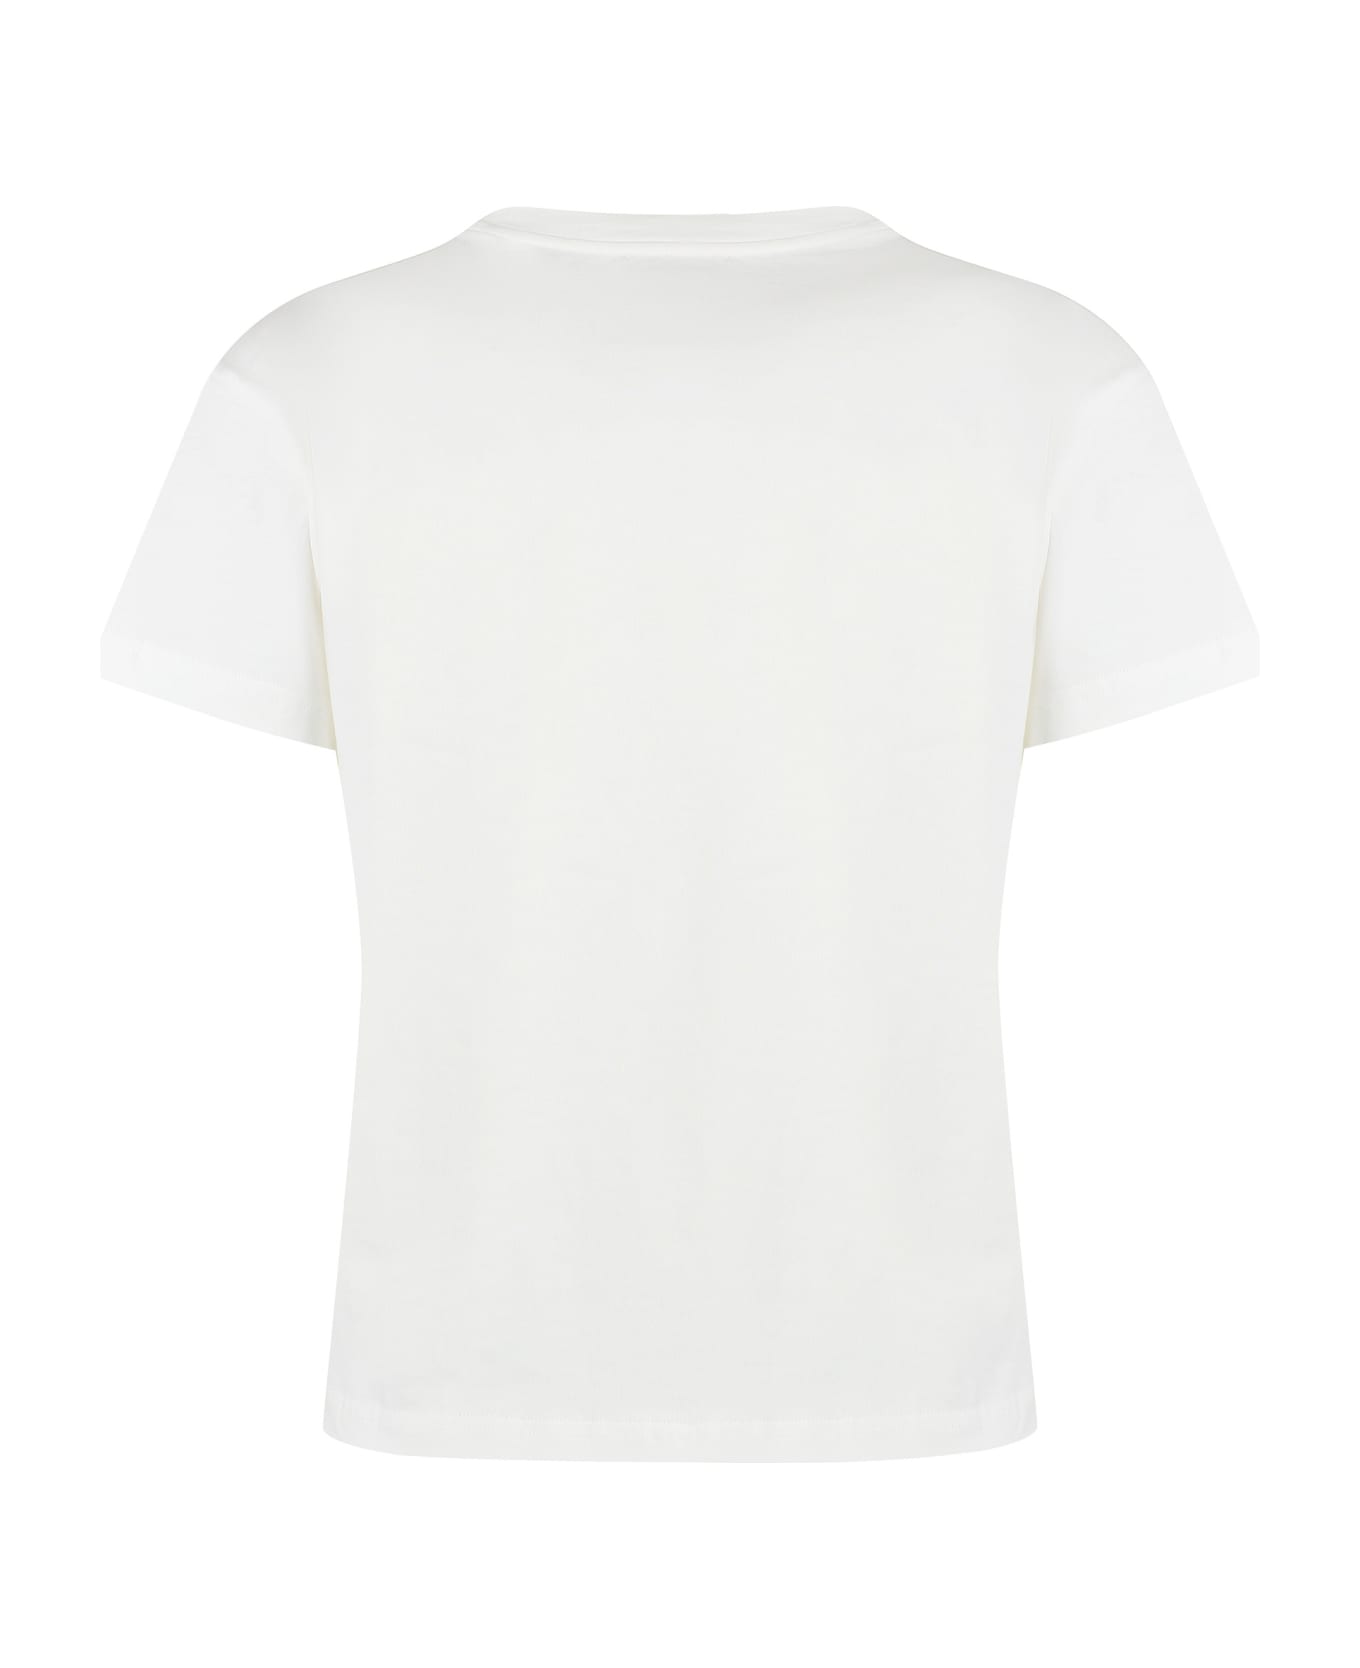 A.P.C. Cotton Crew-neck T-shirt - White